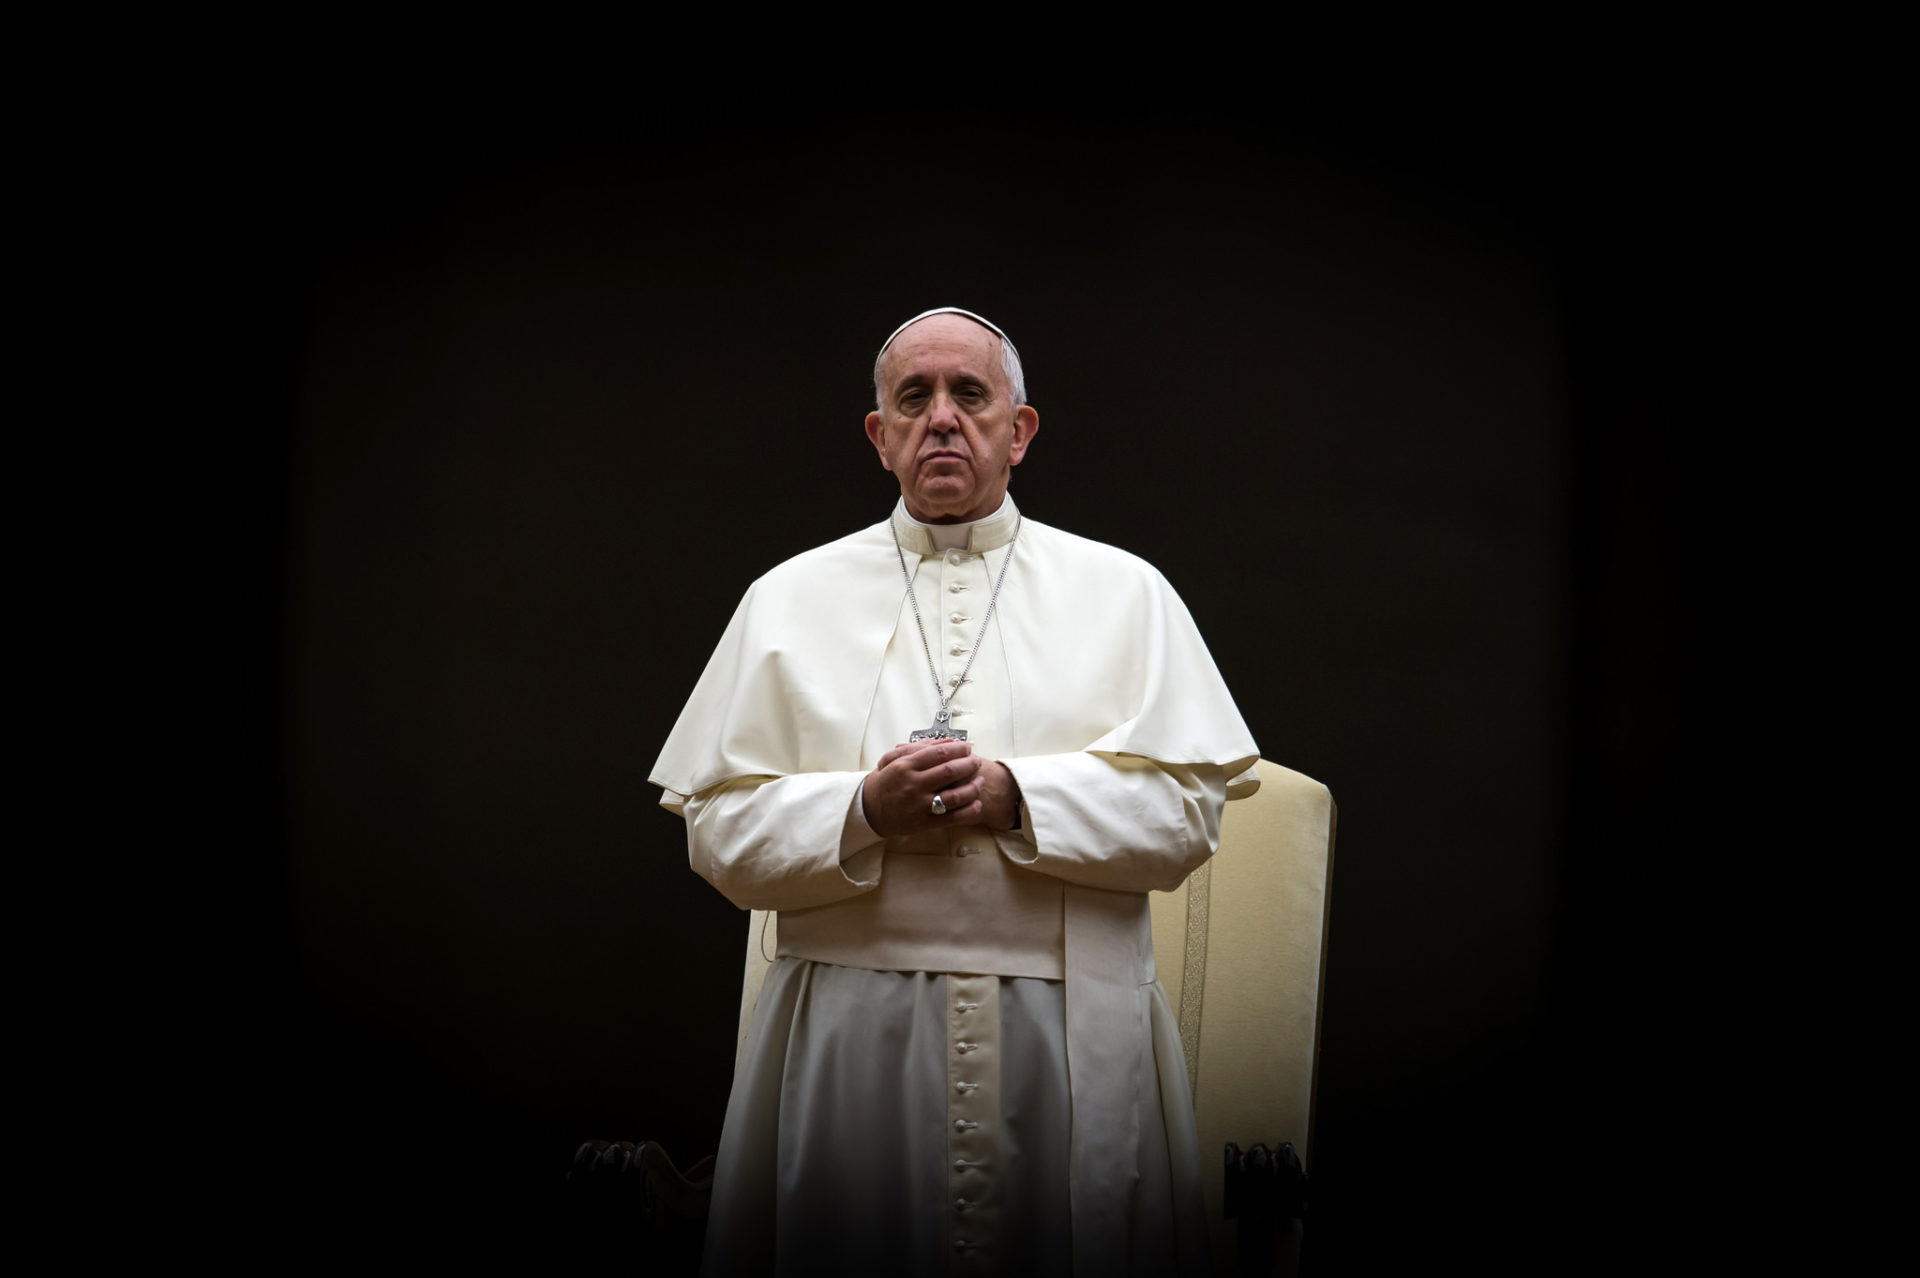 Le pape François a exprimé sa proximité au patriarche et à la communauté copte durement touchée (Photo: Catholic Church England/Flickr/CC BY-NC-SA 2.0)